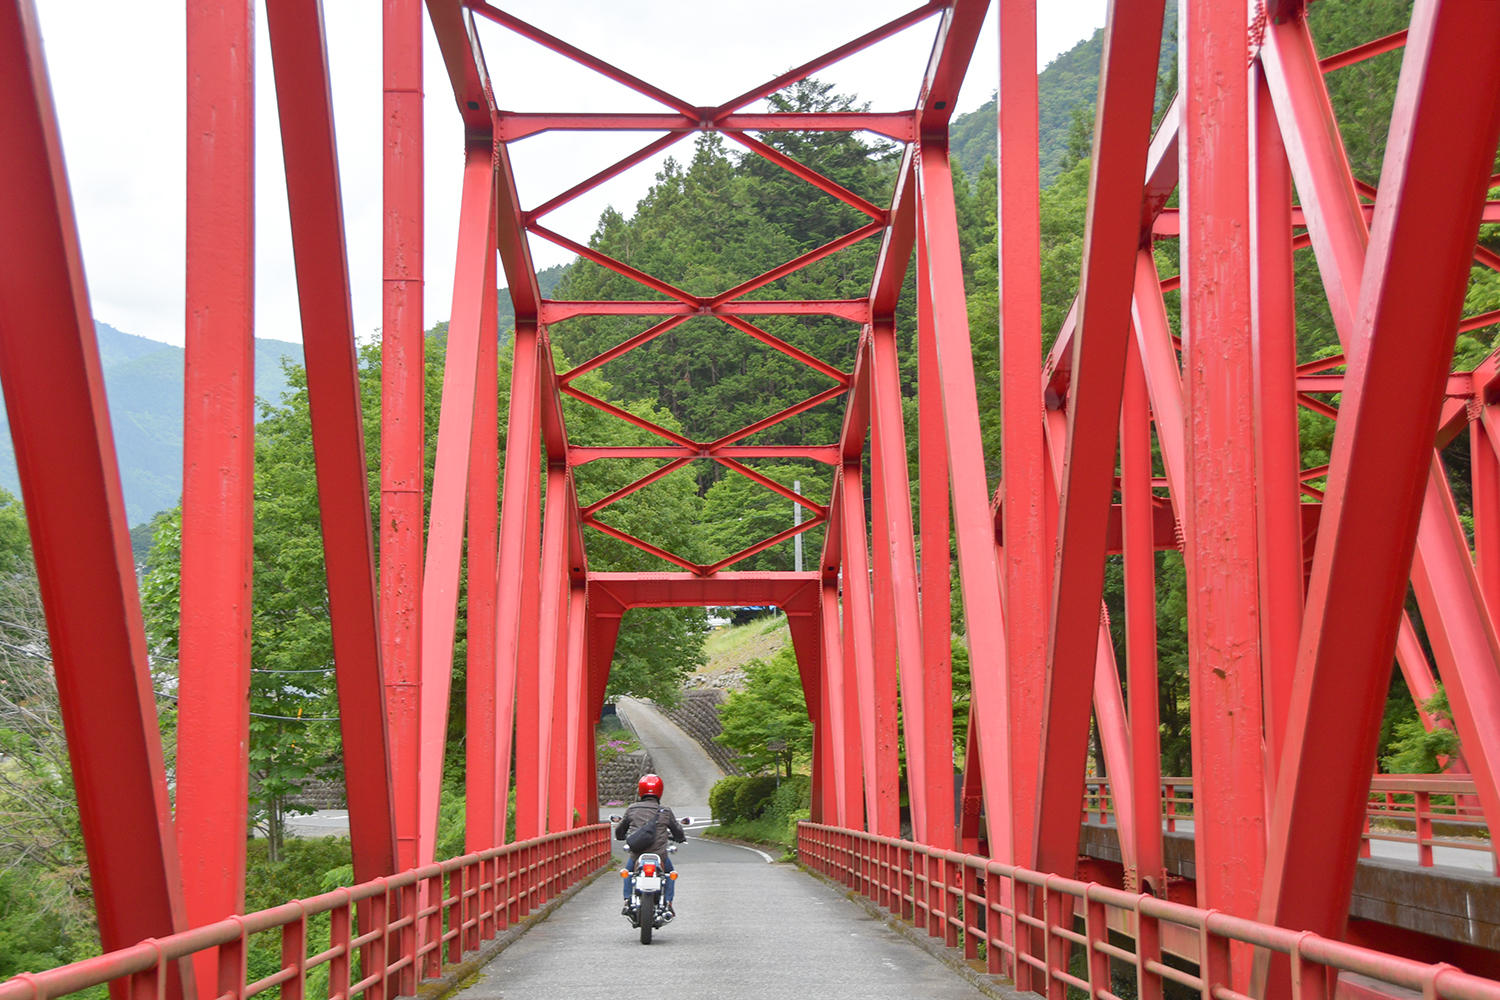 バイクで渡れる吊り橋がある井川方面に行くことに。